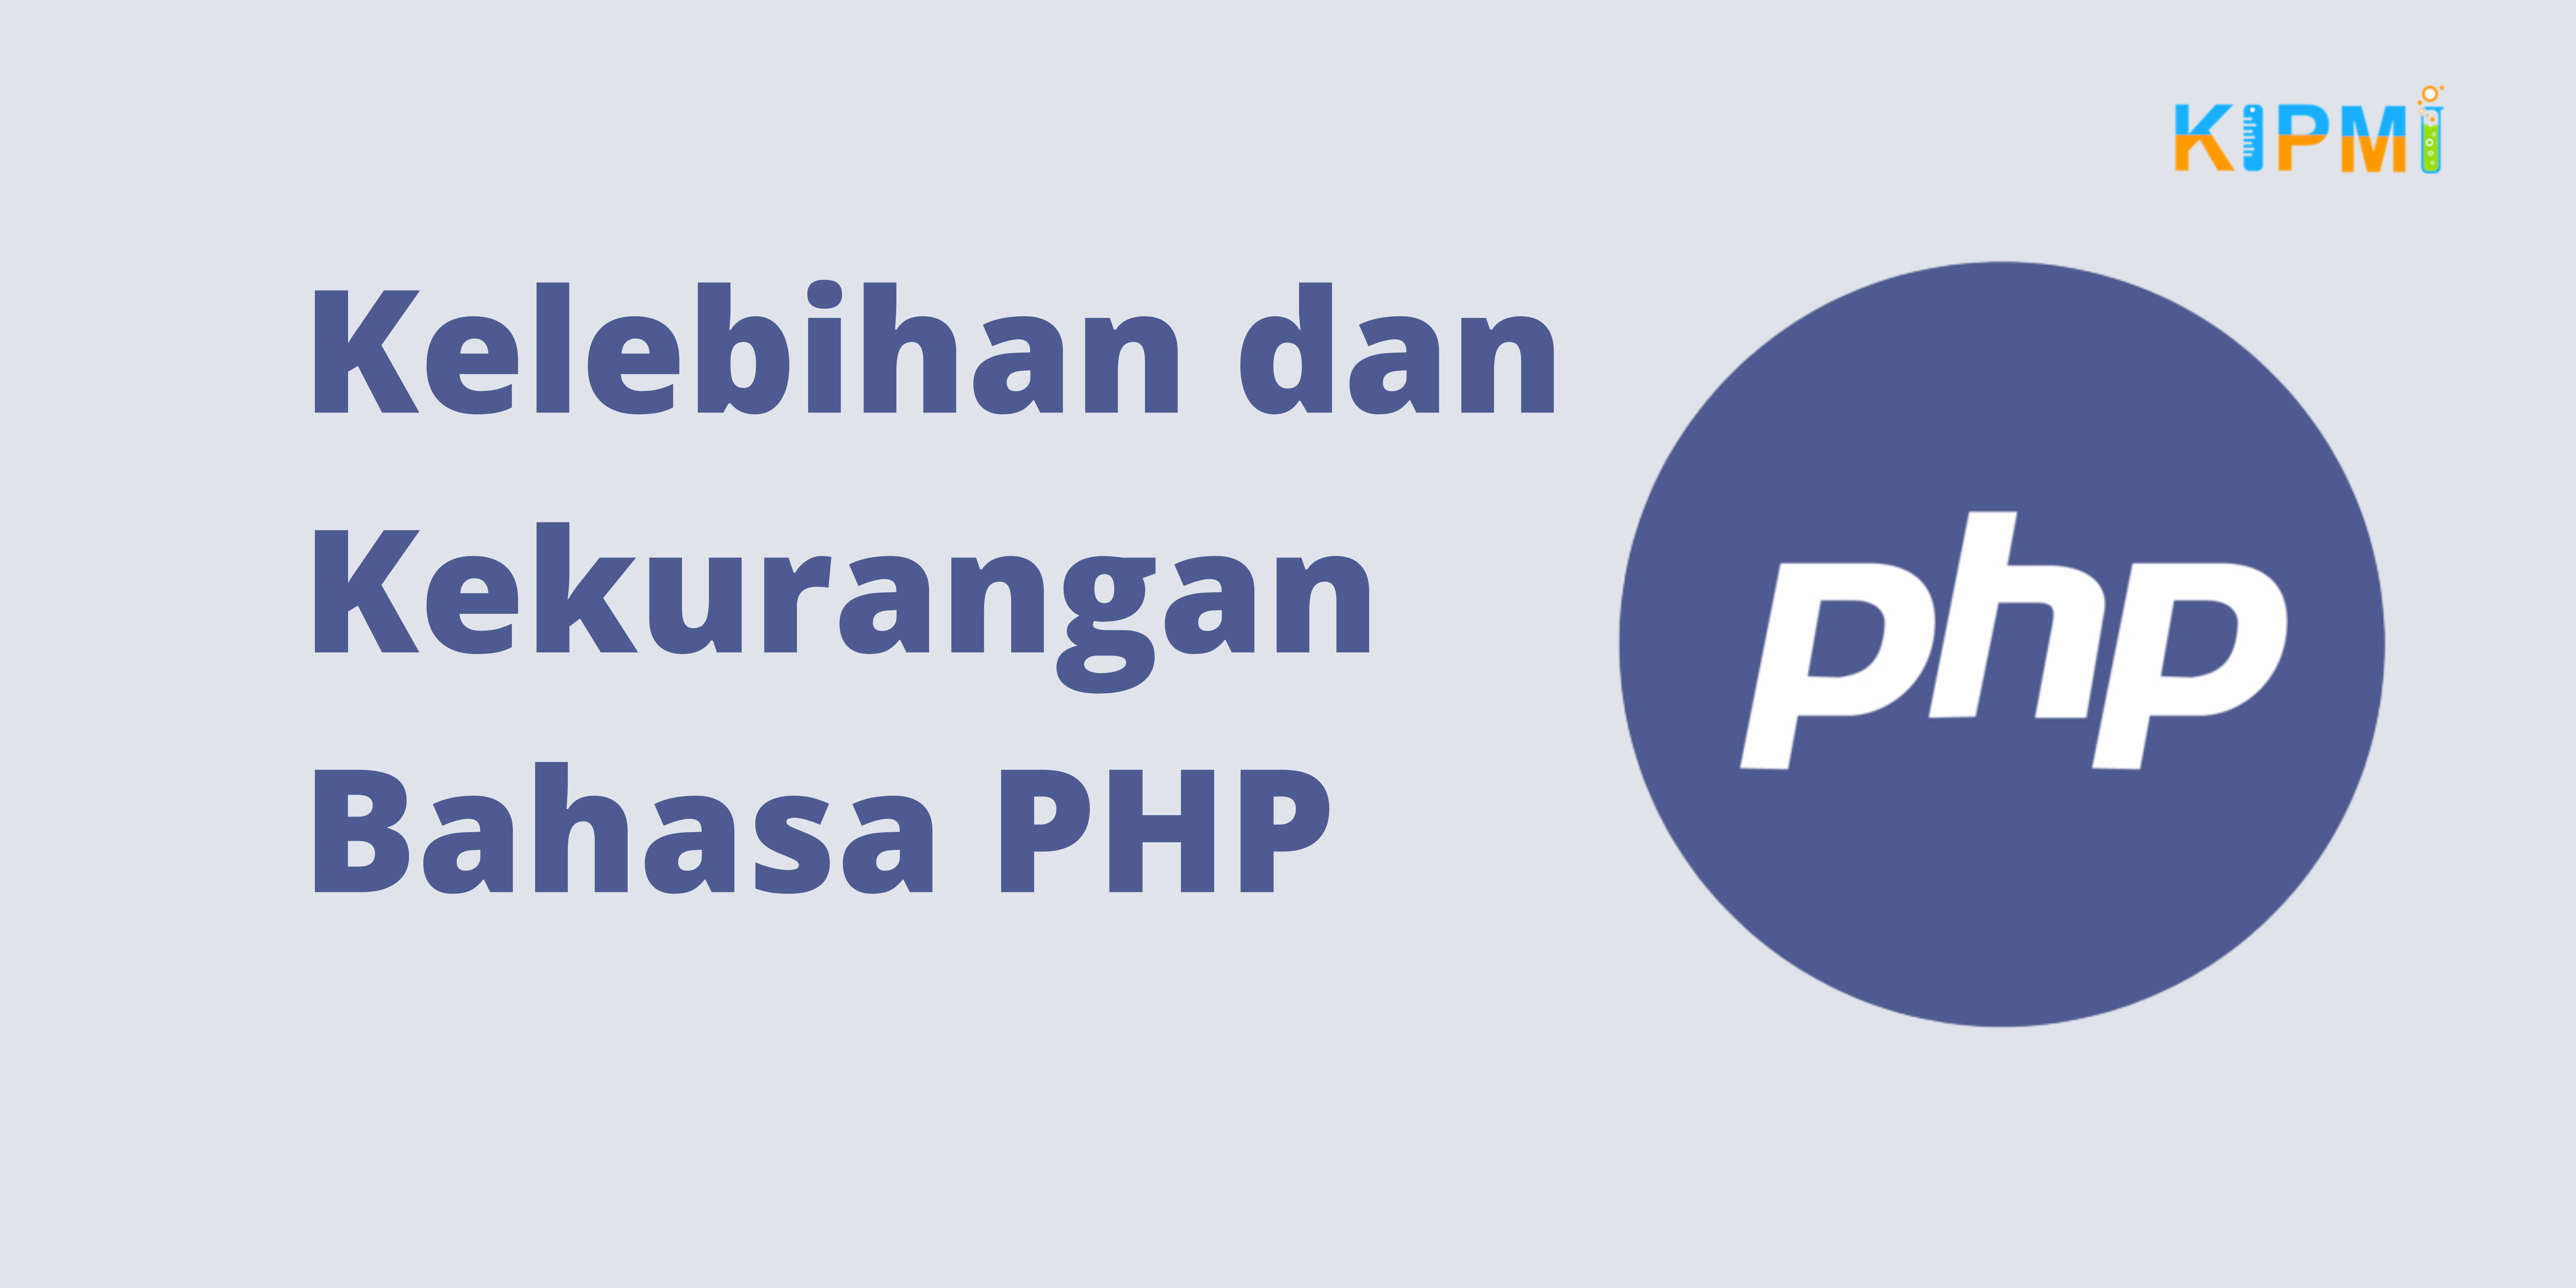 Kelebihan dan Kekurangan Bahasa PHP